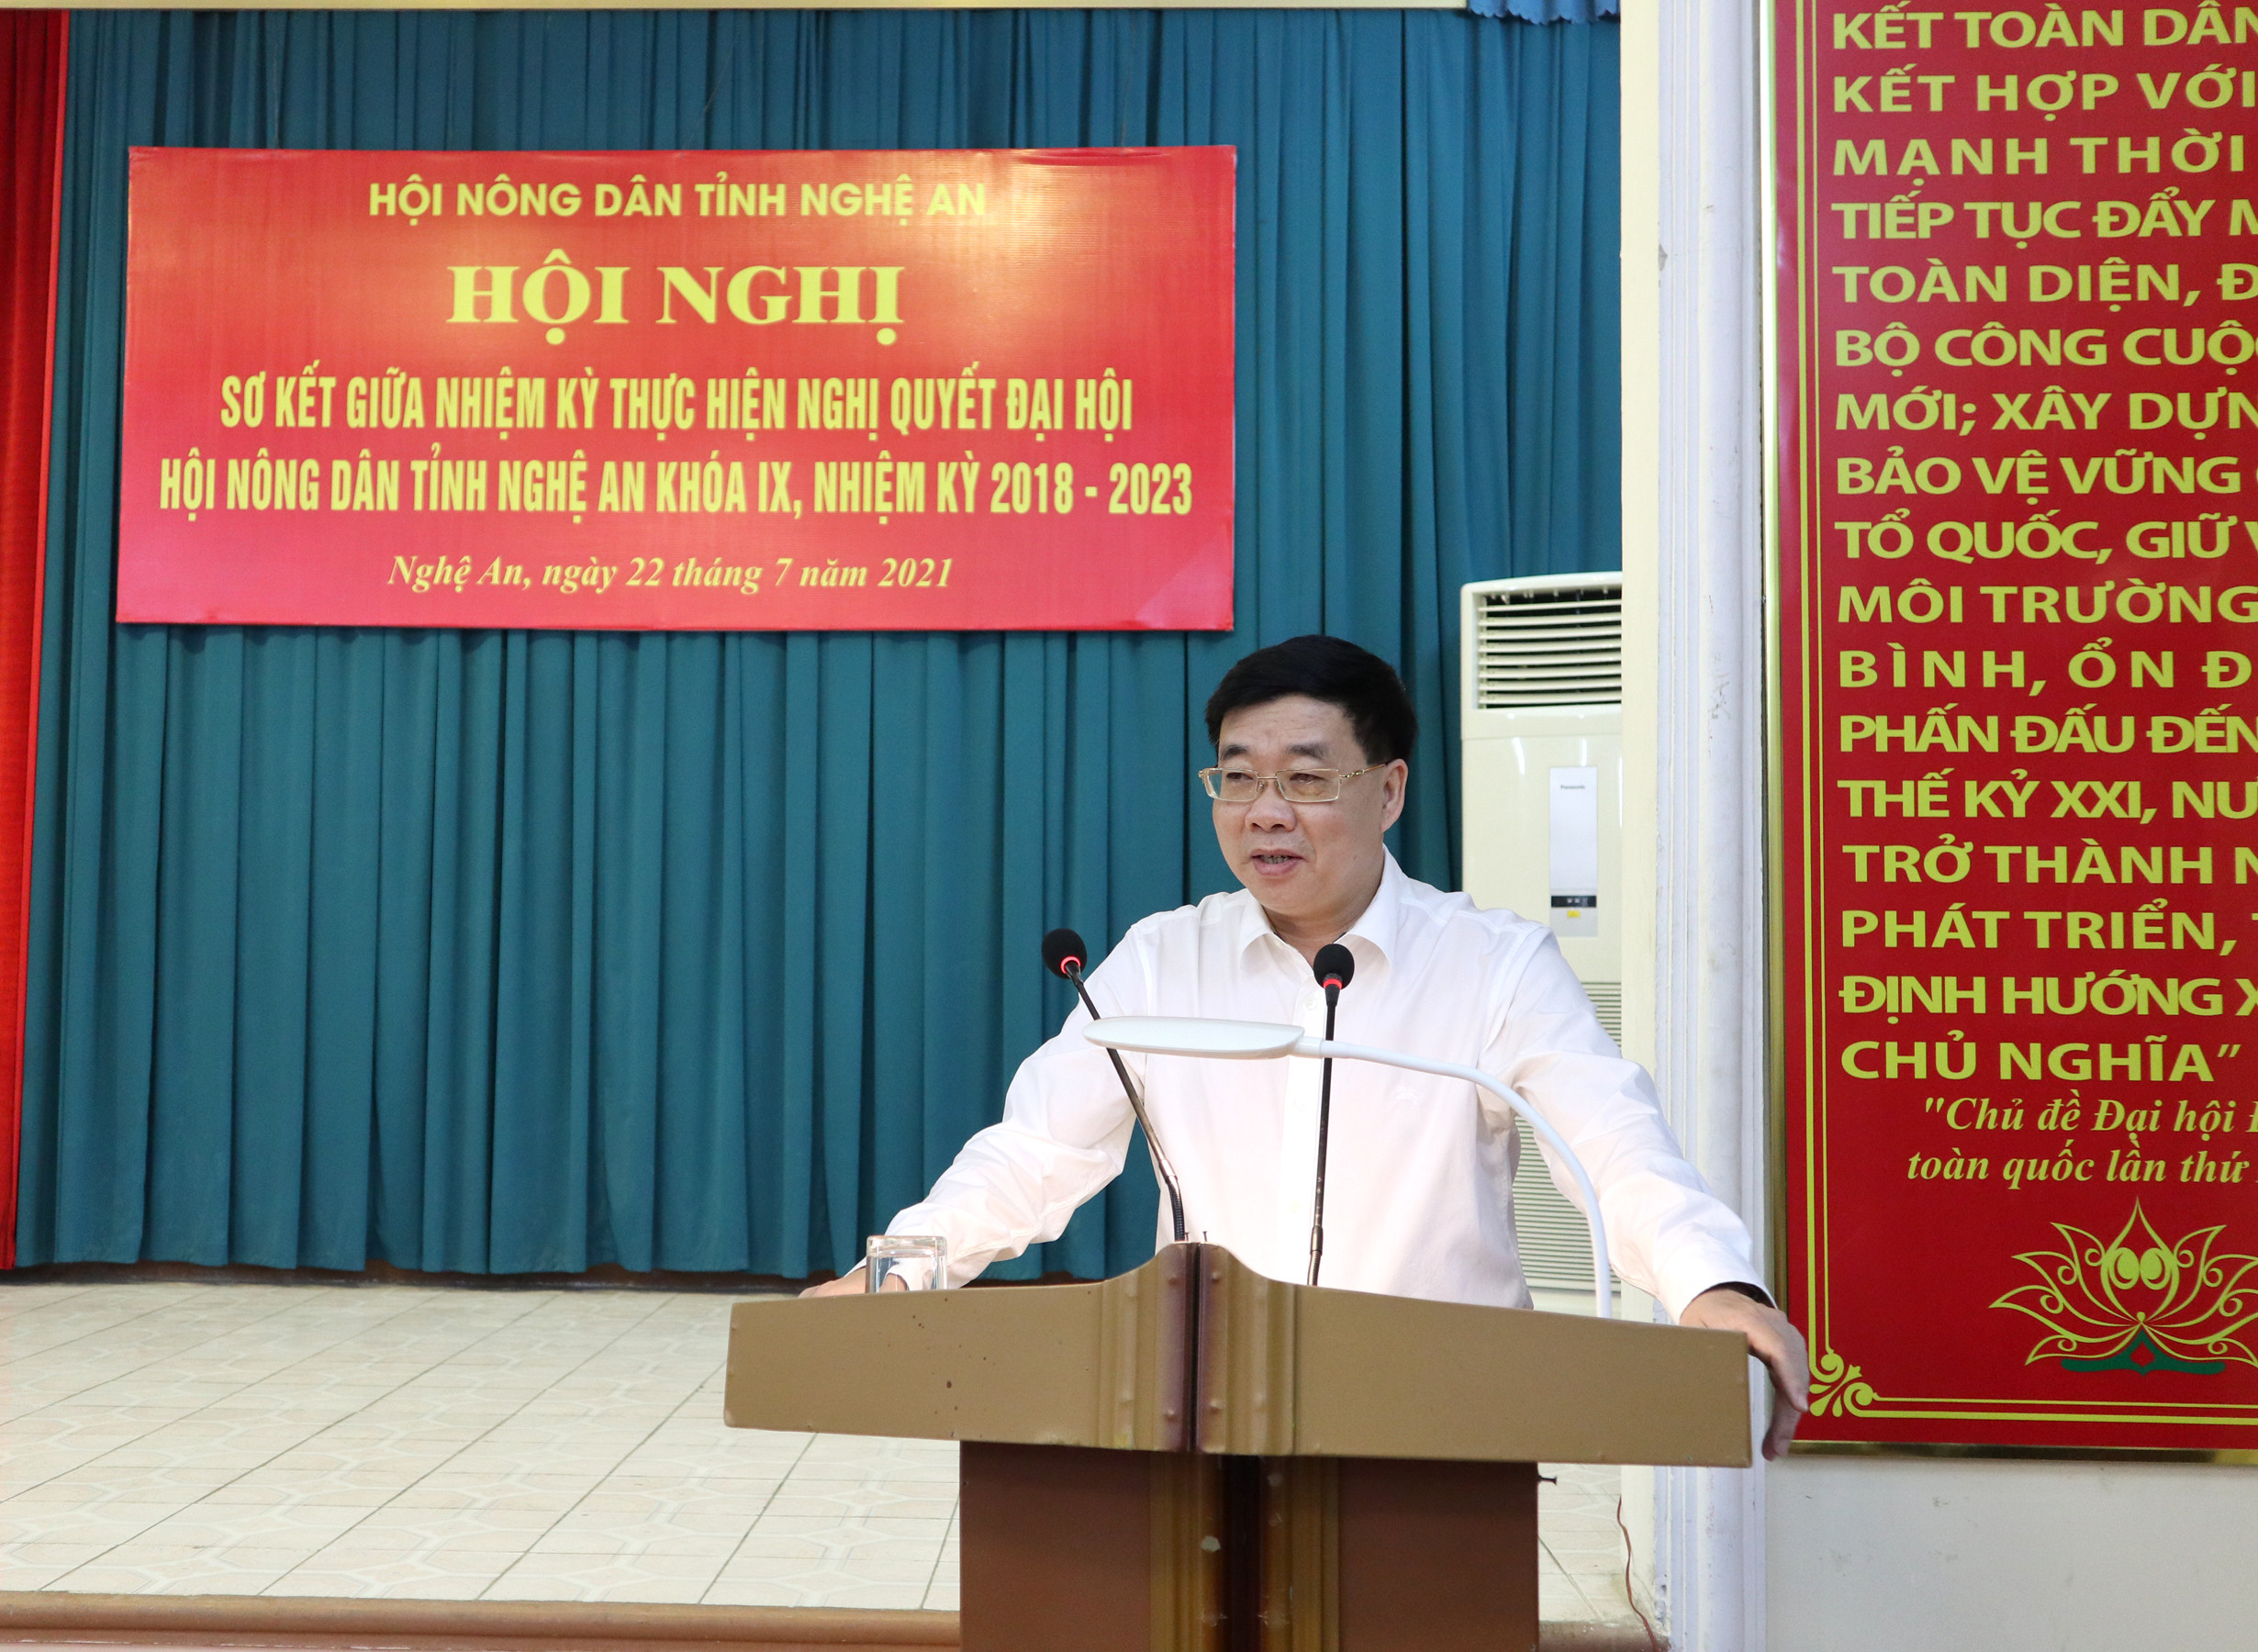 đồng chí Nguyễn Văn Thông, Phó Bí thư thường trực Tỉnh ủy ghi nhận và biểu dương những kết quả mà các cấp Hội Nông dân đã đạt được trong nửa nhiệm kỳ qua